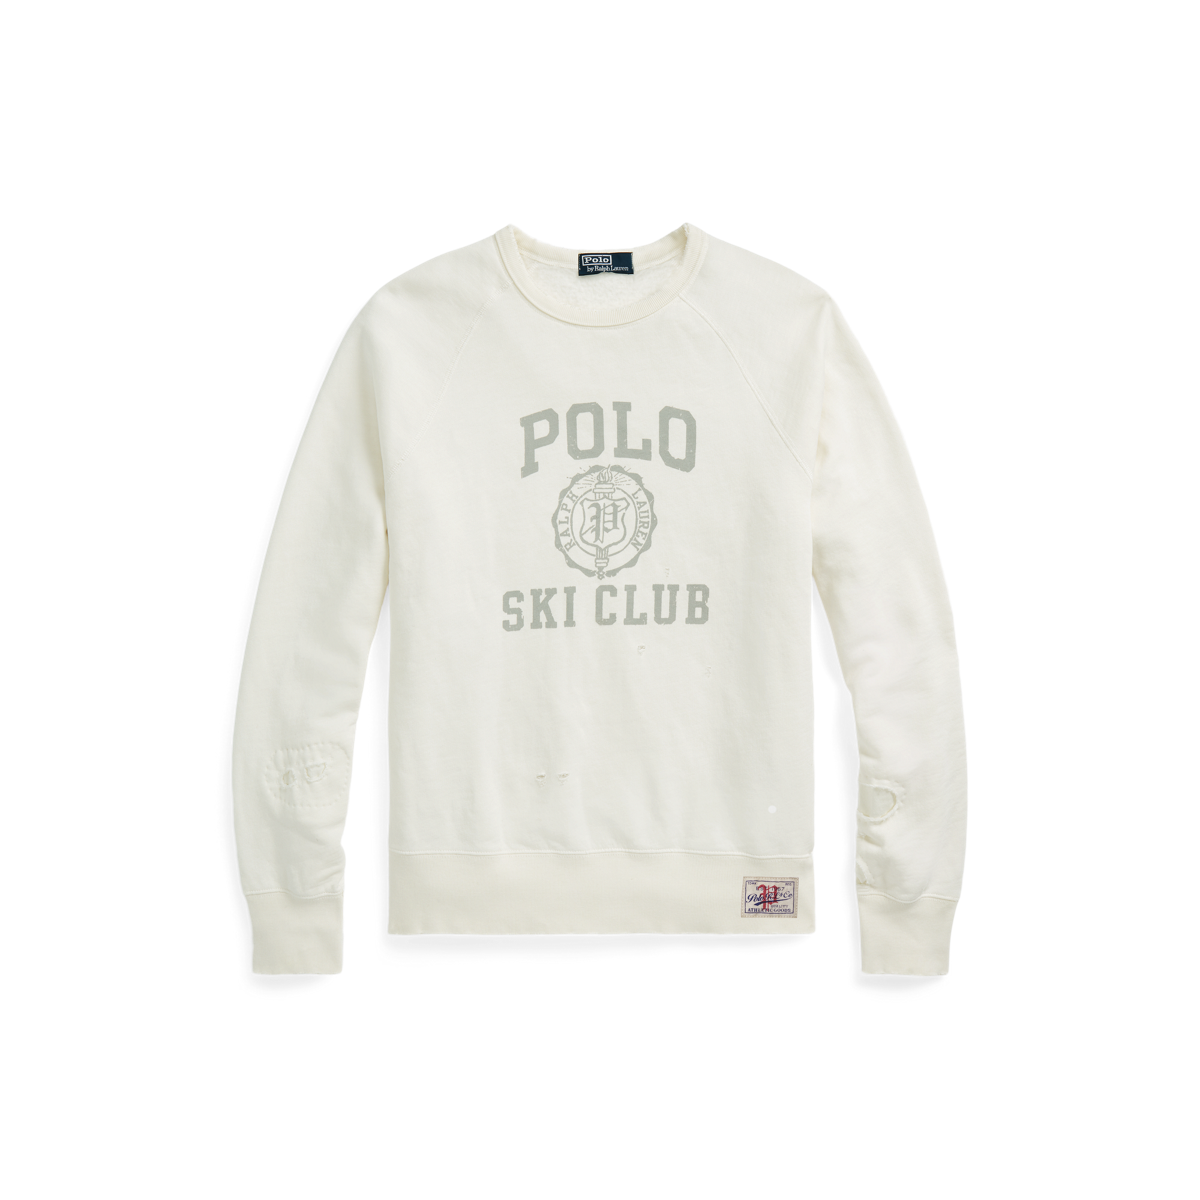 Polo Ski Club Fleece Sweatshirt